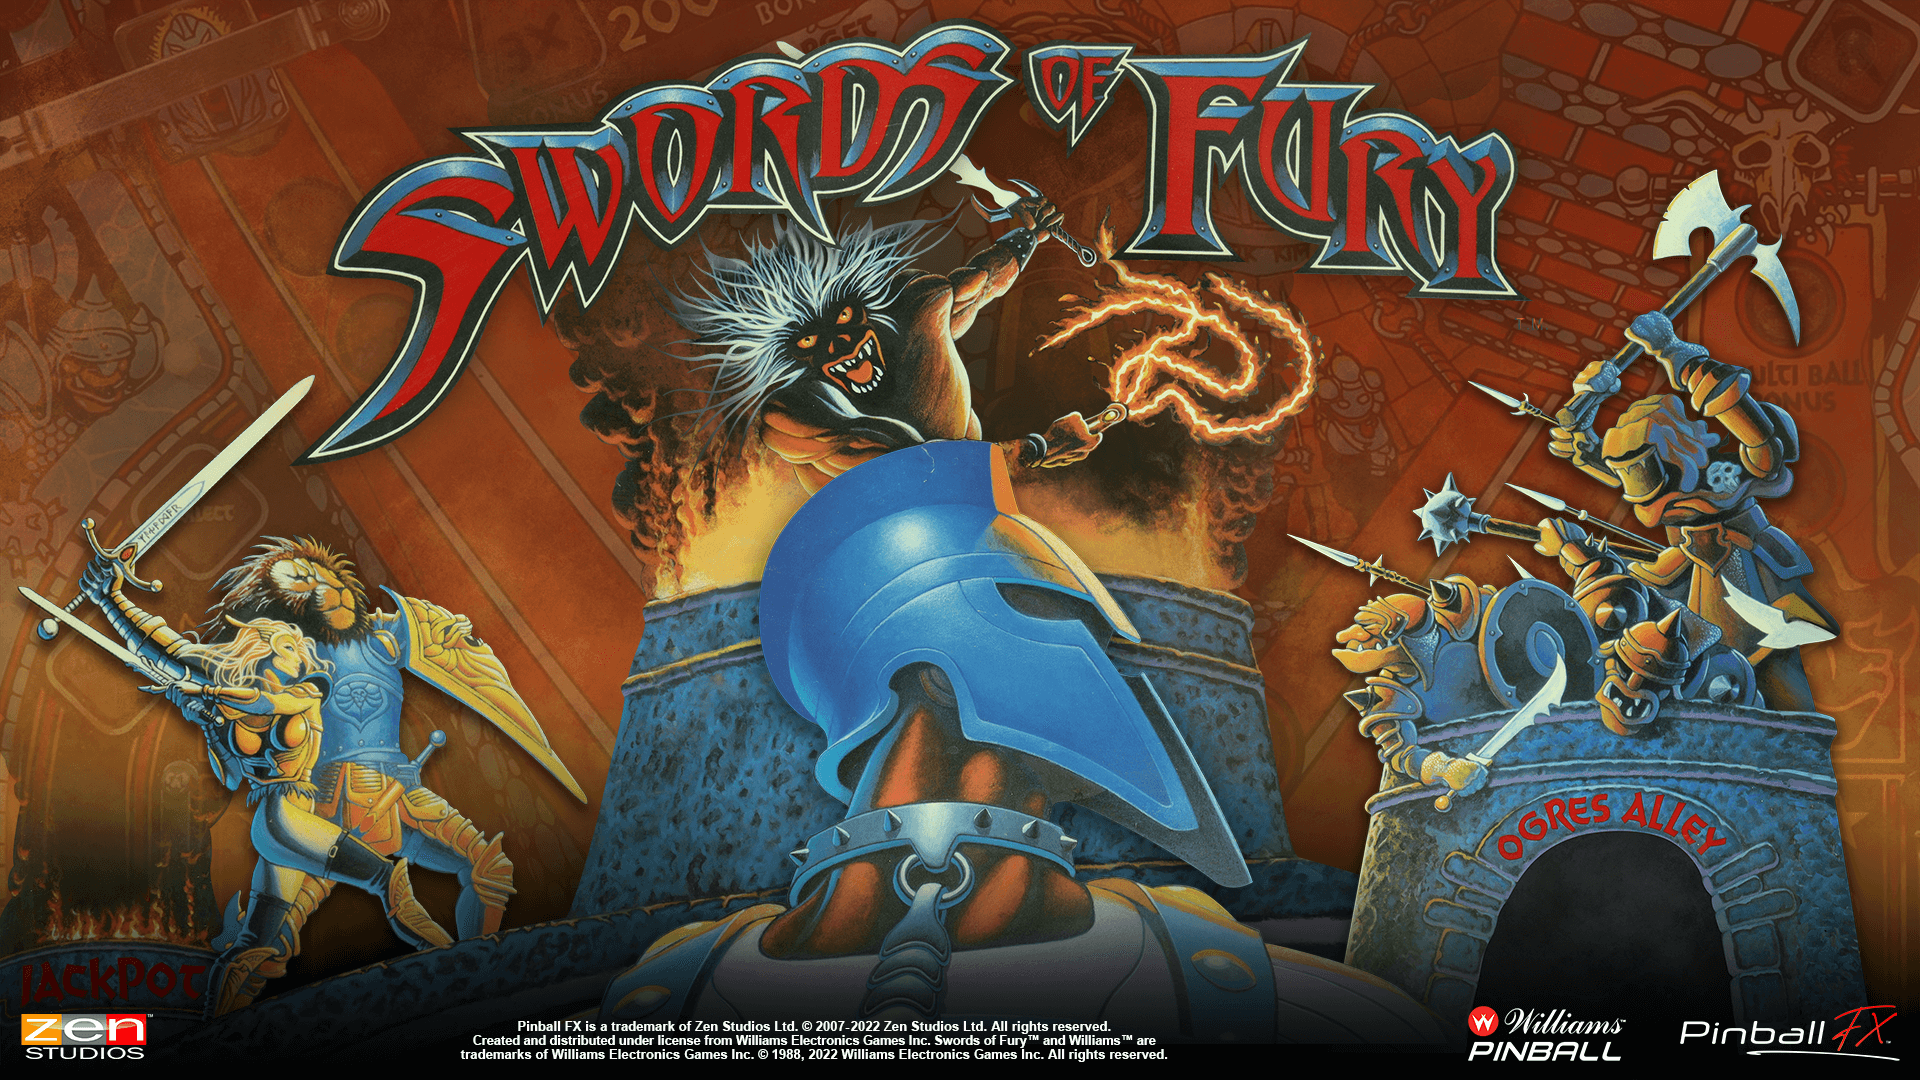 Swords of Fury™